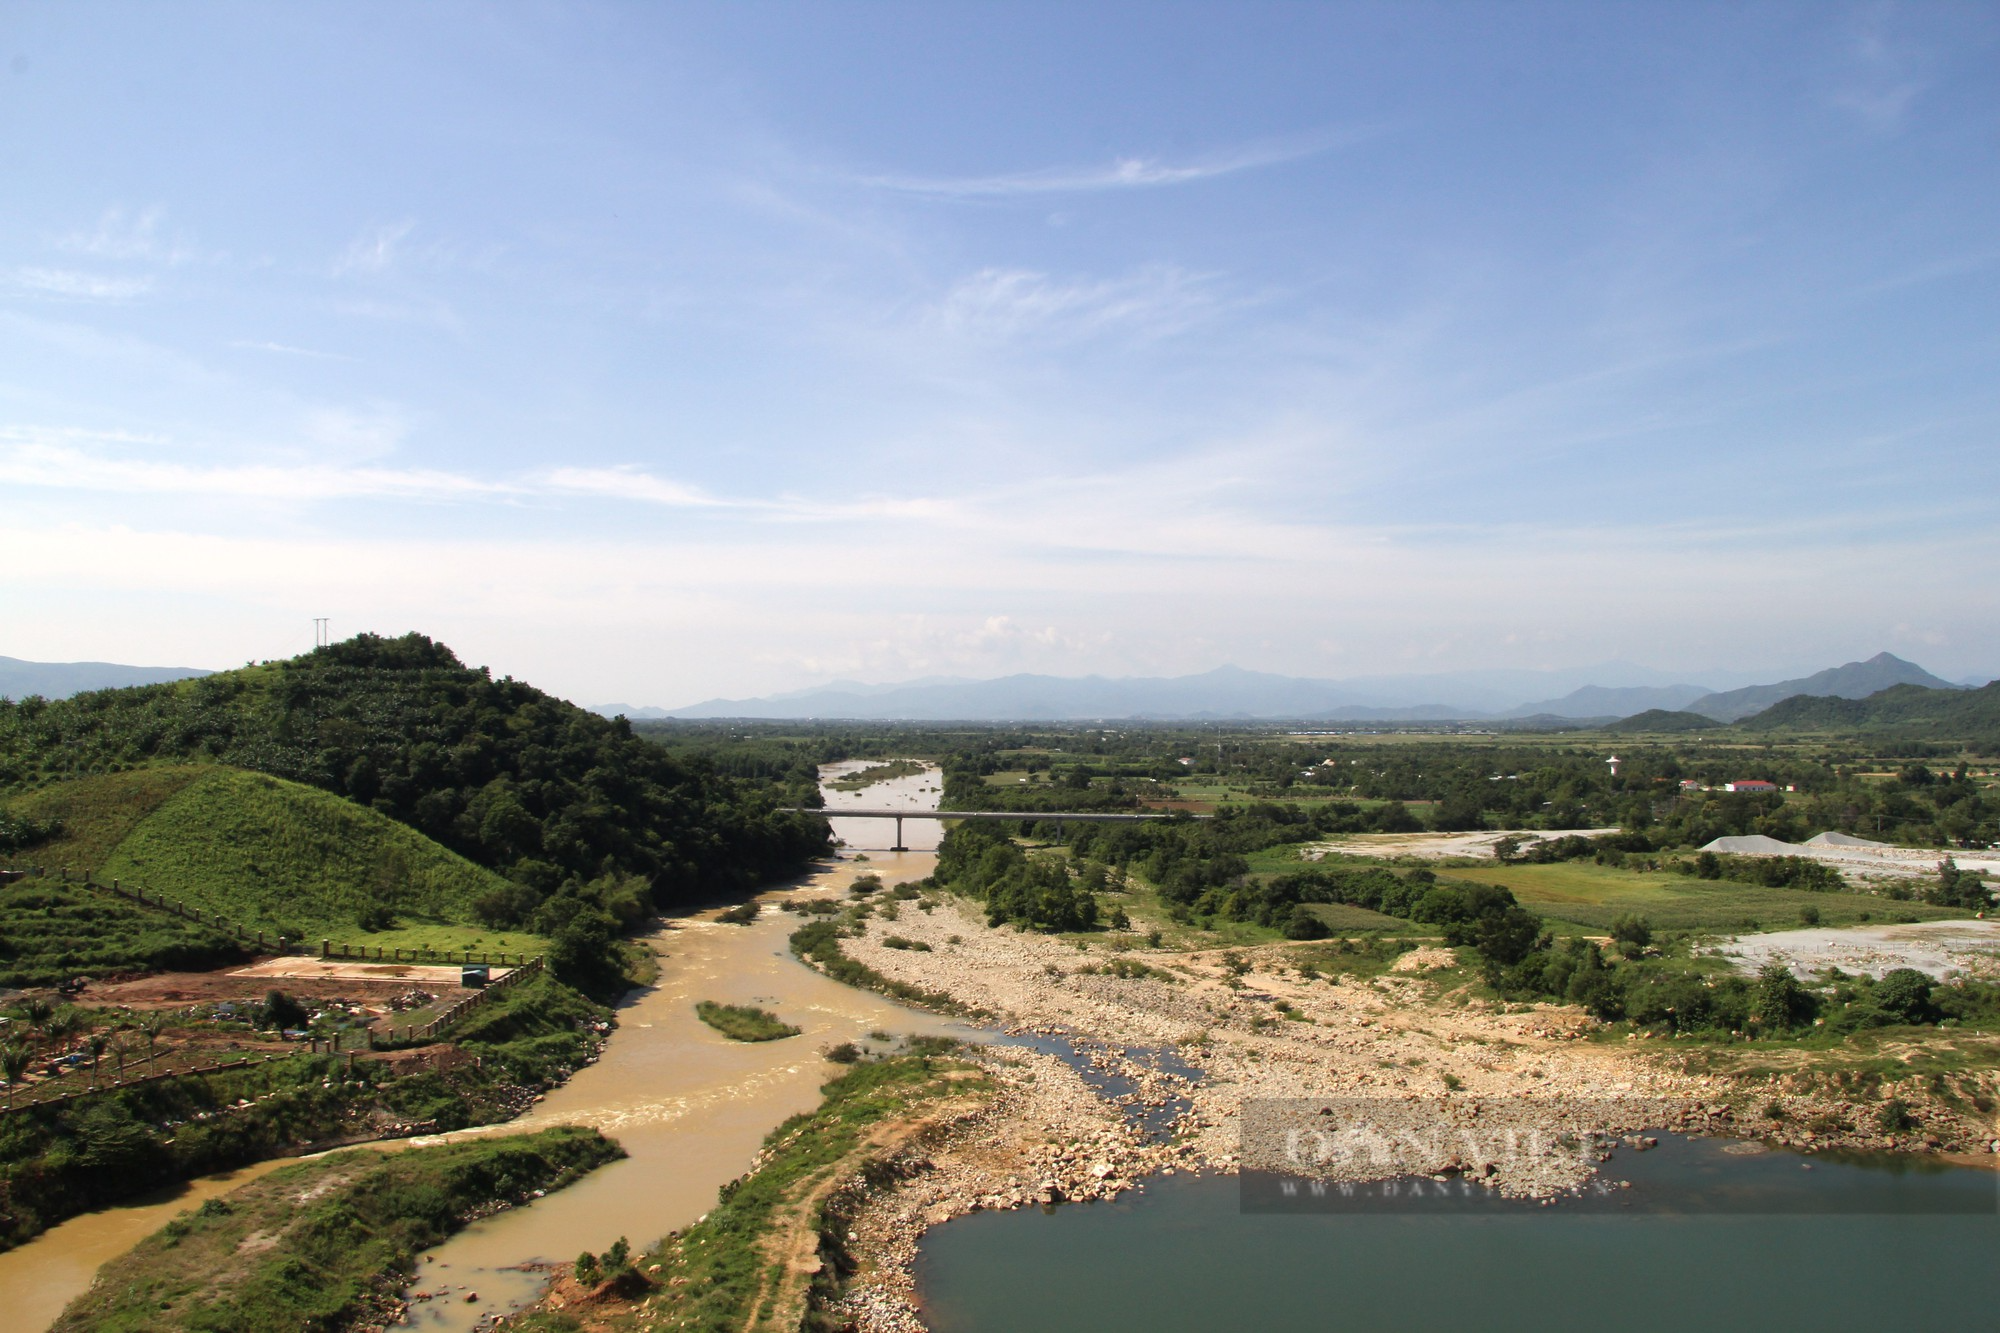 Siêu công trình hồ thủy lợi Sông Cái có đập bê tông dài nhất Việt Nam ở Ninh Thuận - Ảnh 8.